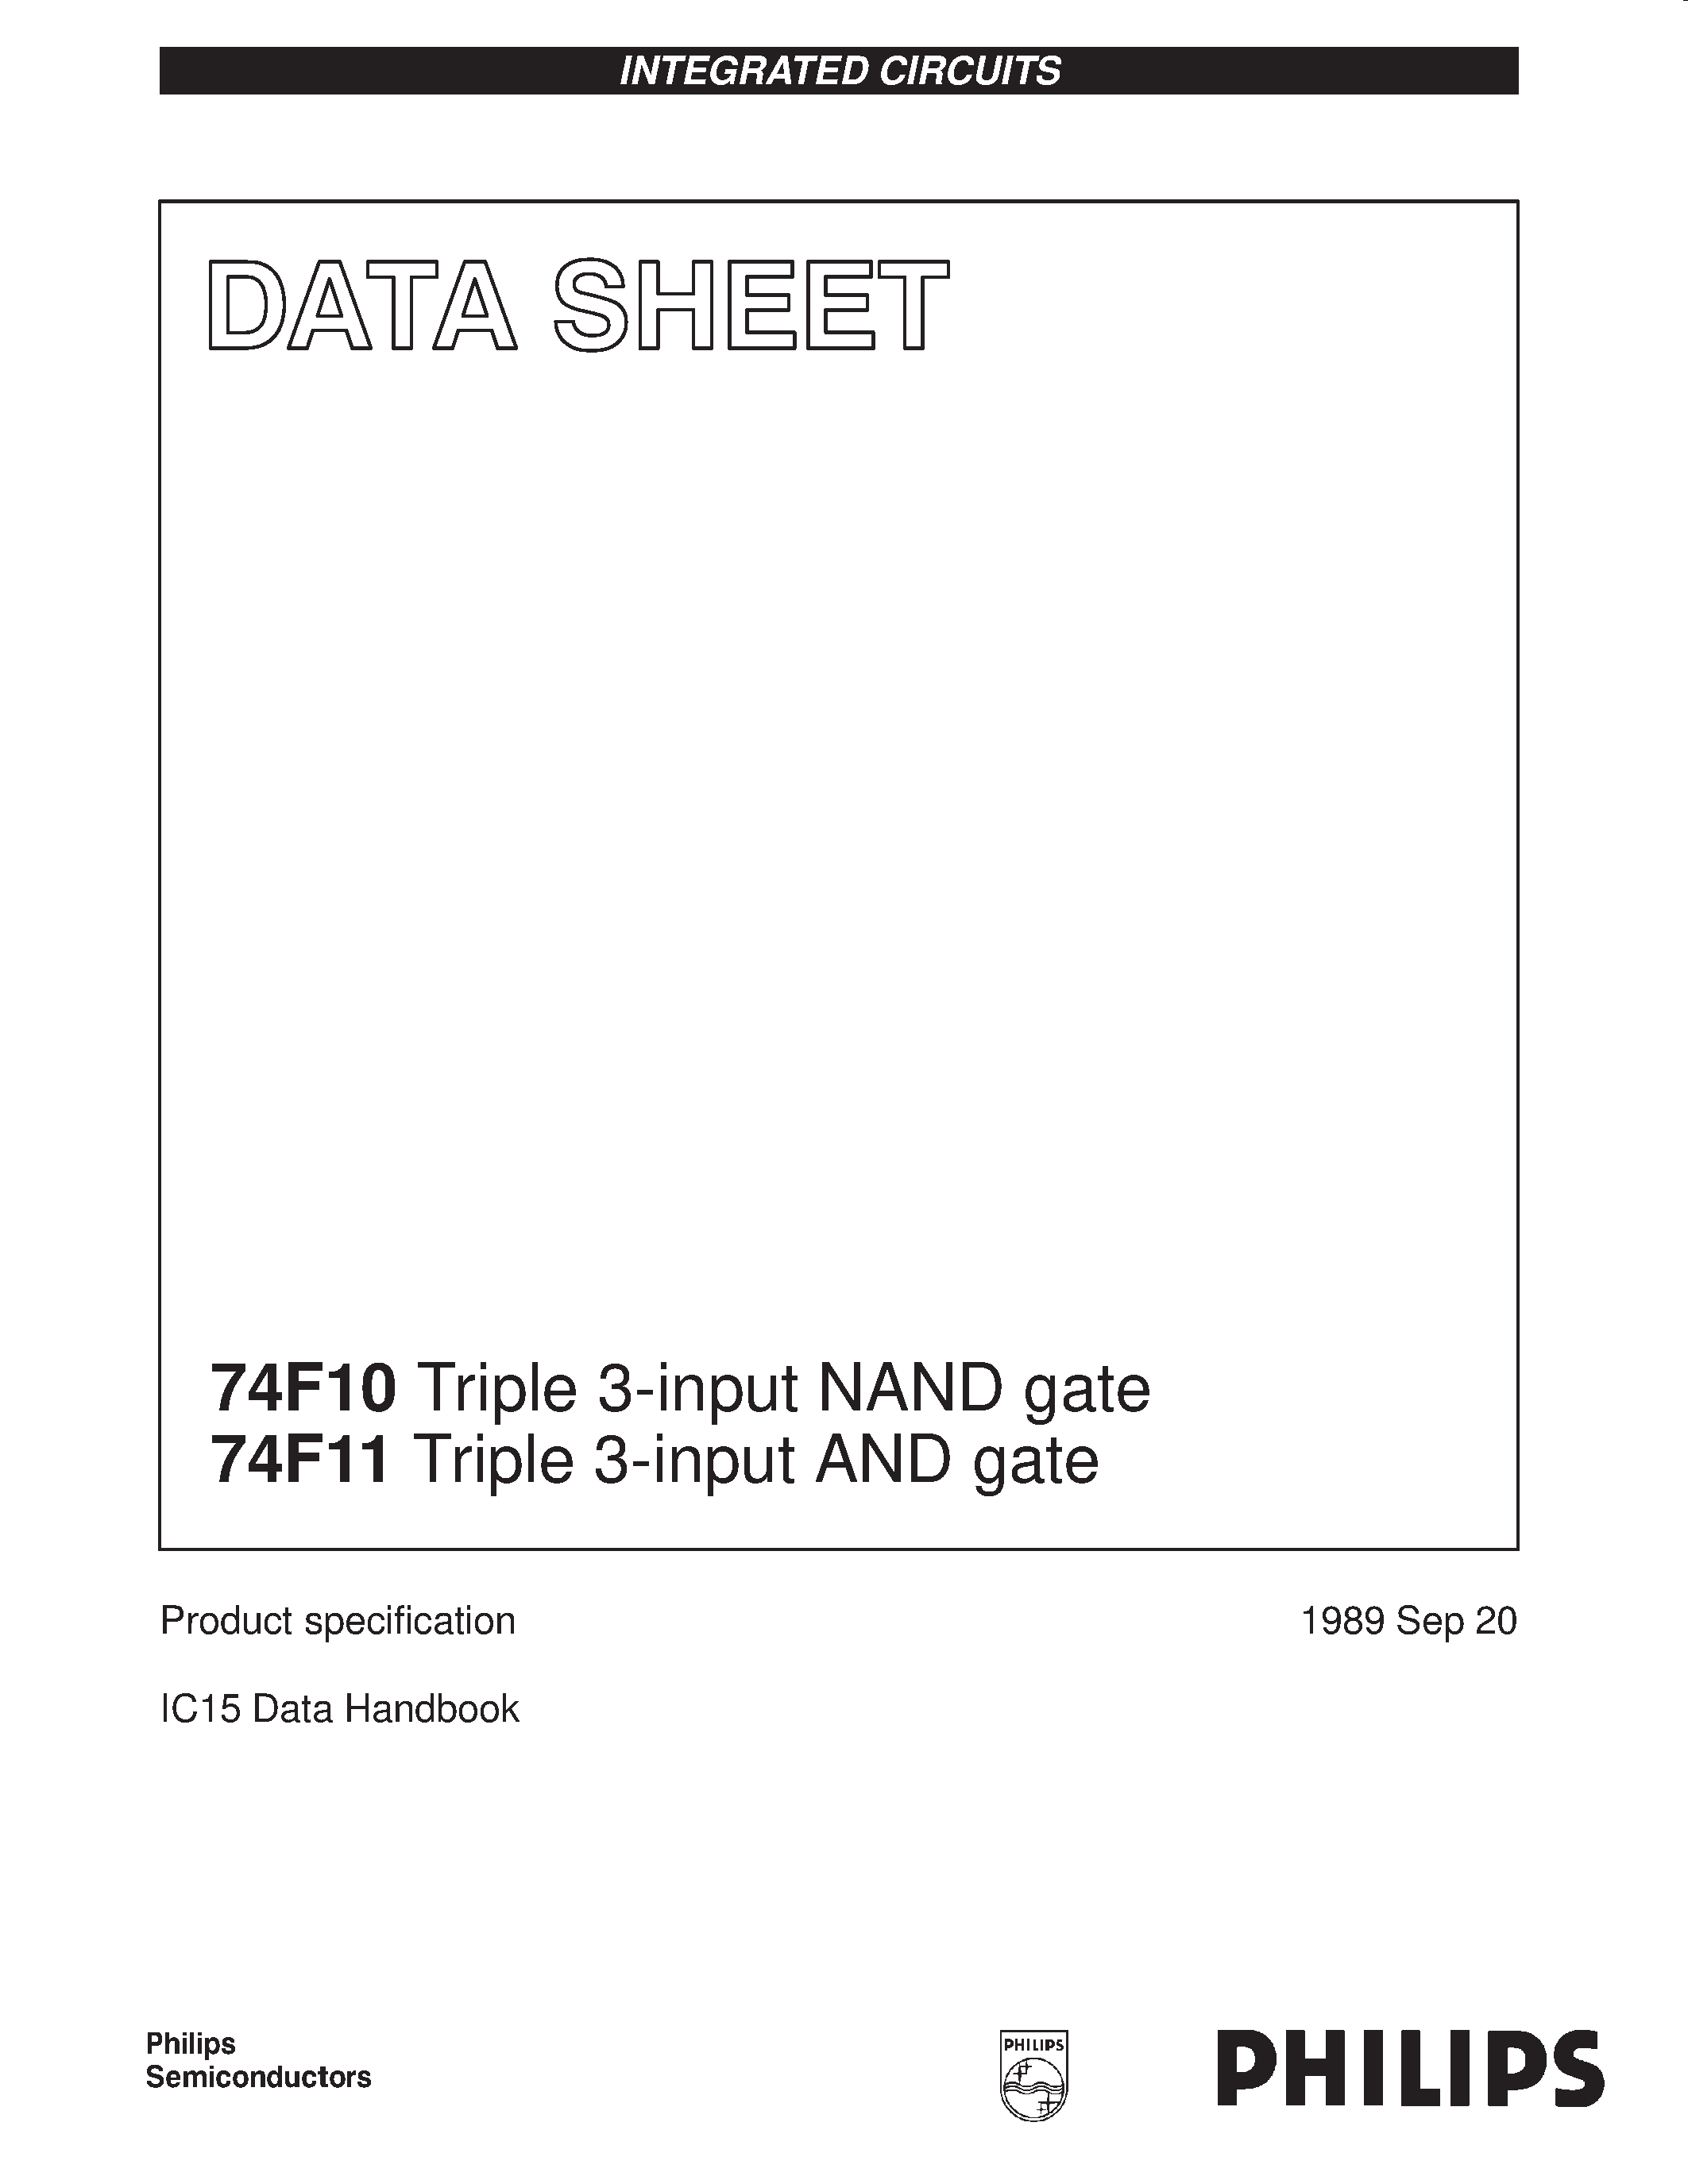 Даташит 74F10 - Triple 3-input NAND gate страница 1